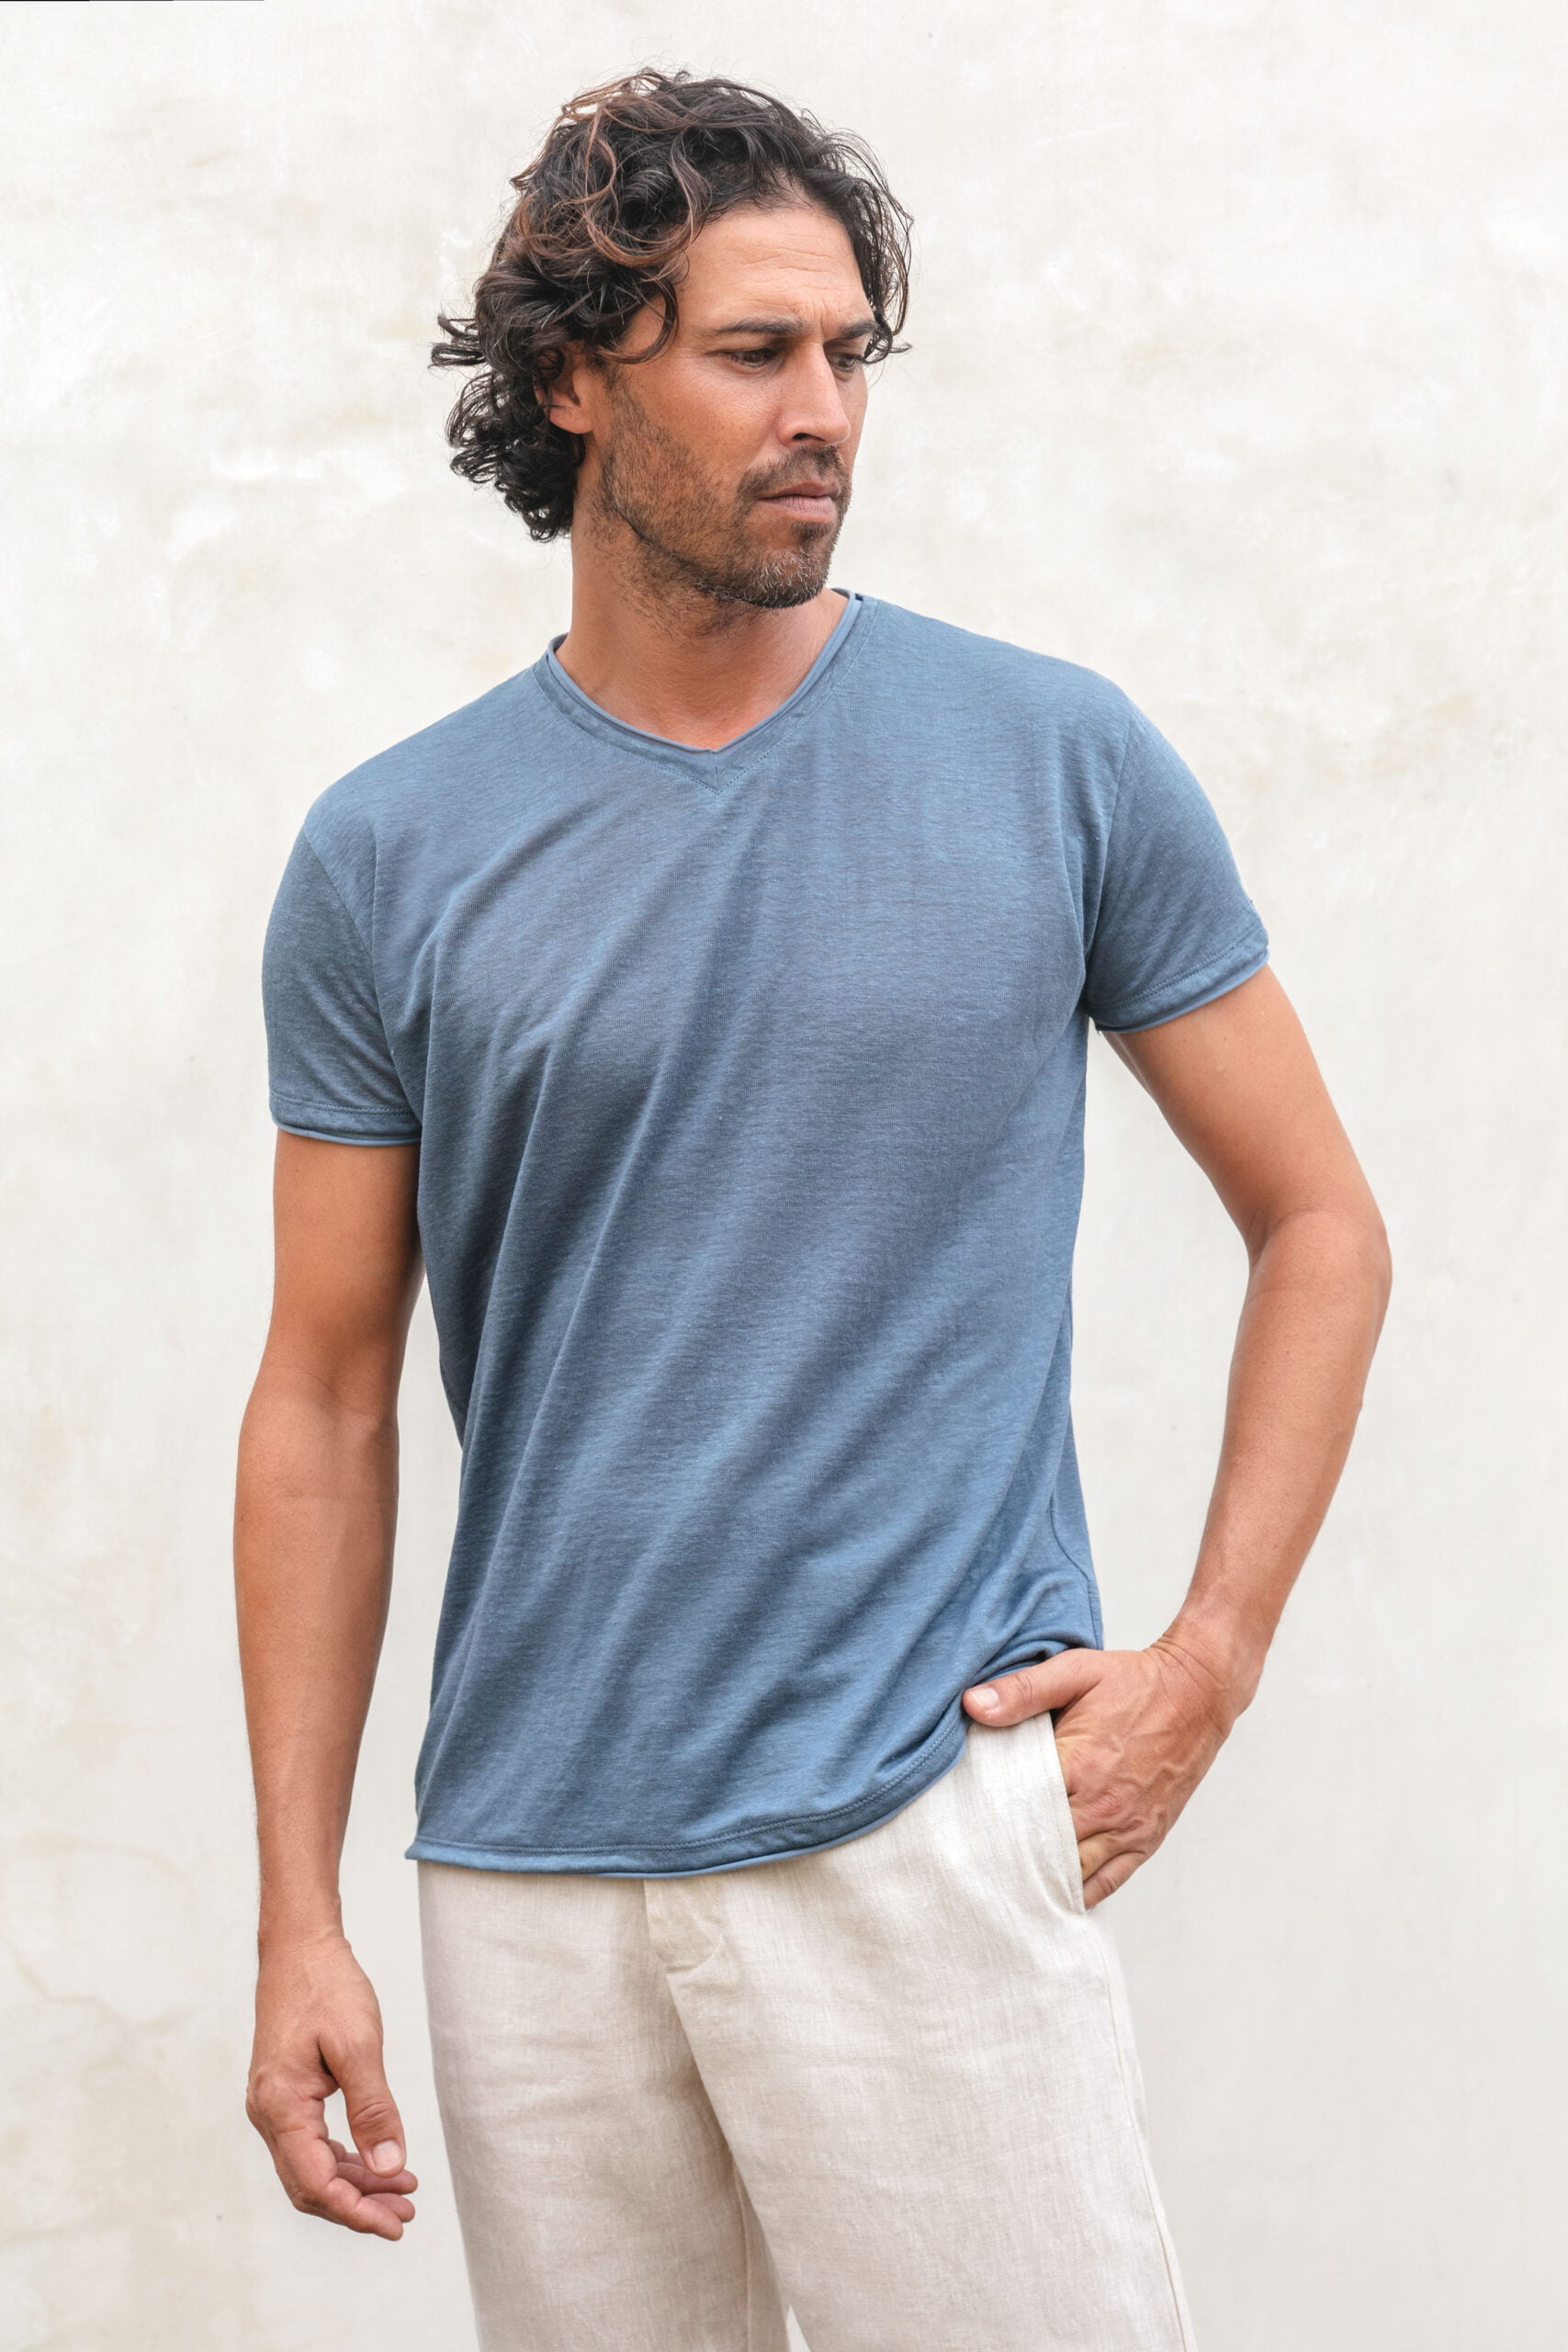 Linen jersey vneck teeshirt - Ambun T-Shirt Linen Jersey Blue Grey